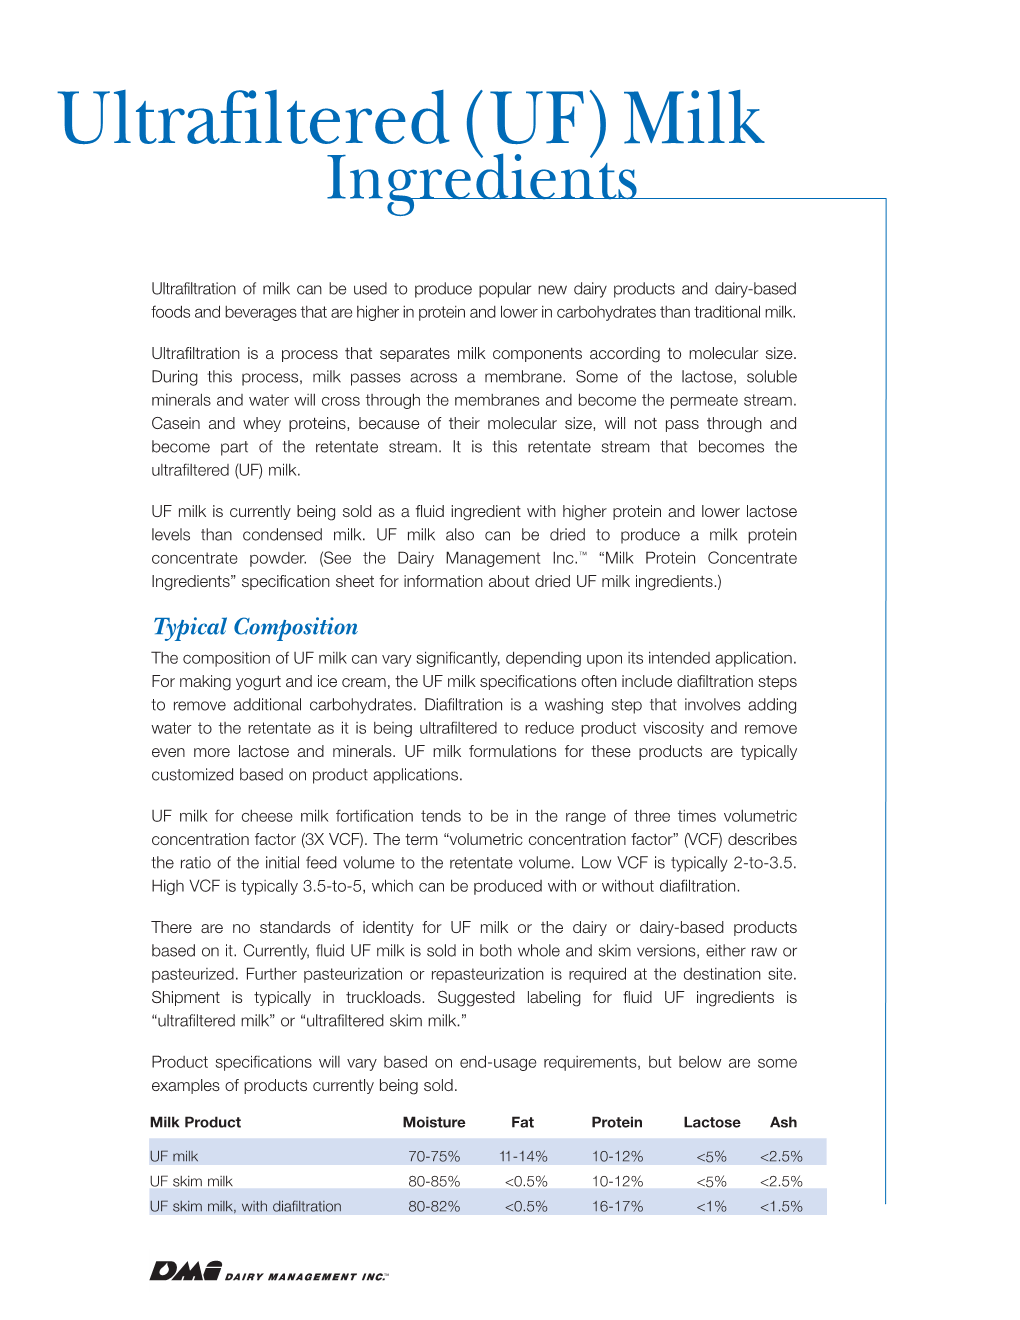 (UF) Milk Ingredients